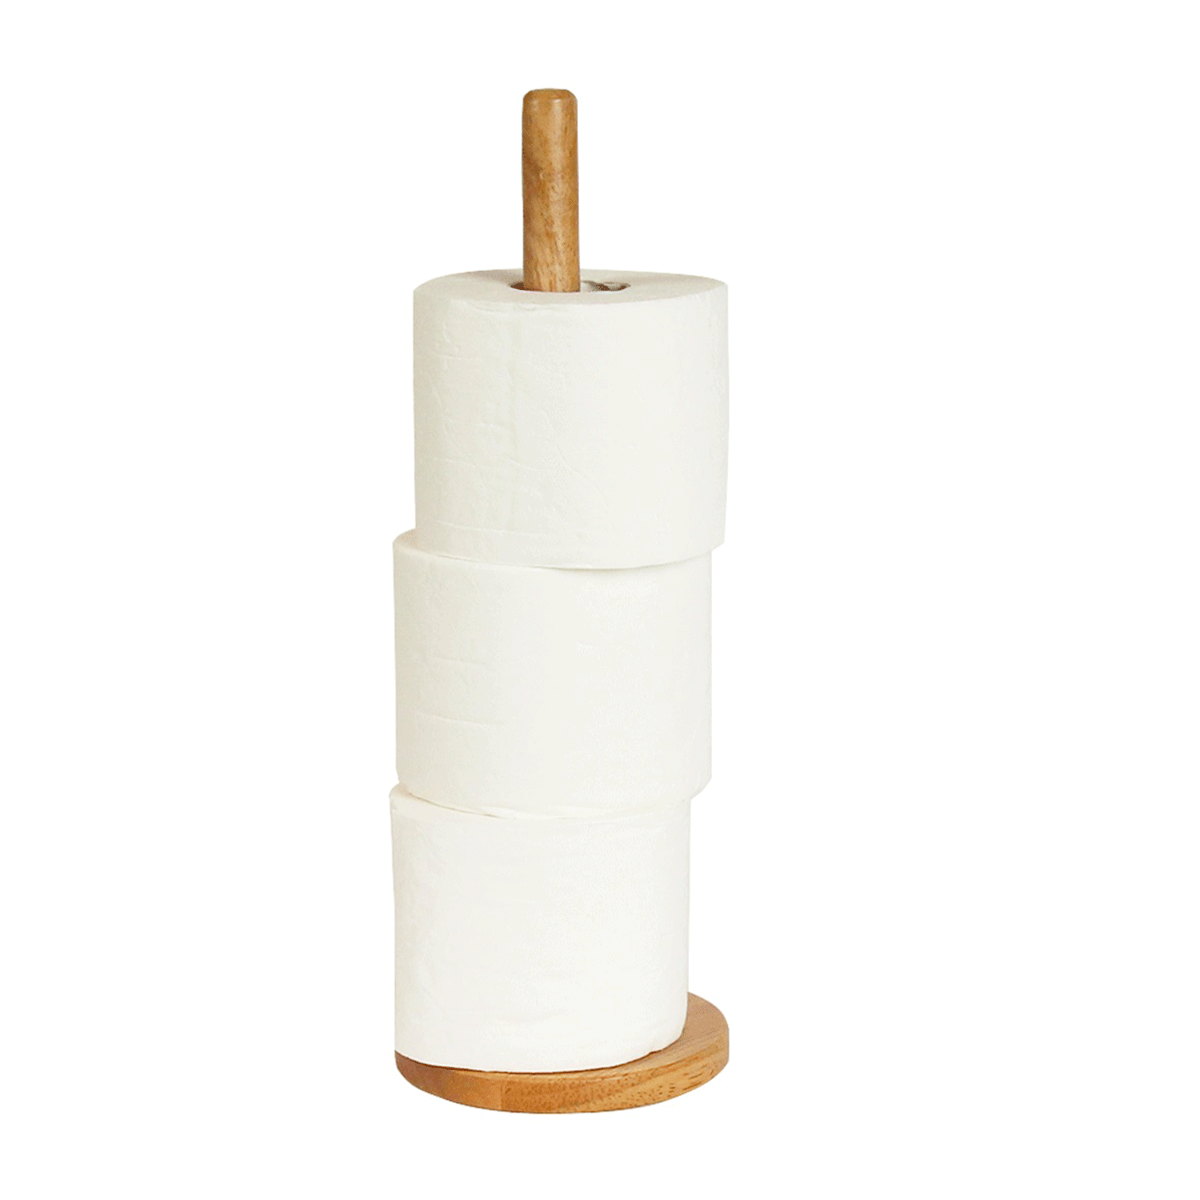 Porte papier toilette à ventouse - Blanc - ON RANGE TOUT